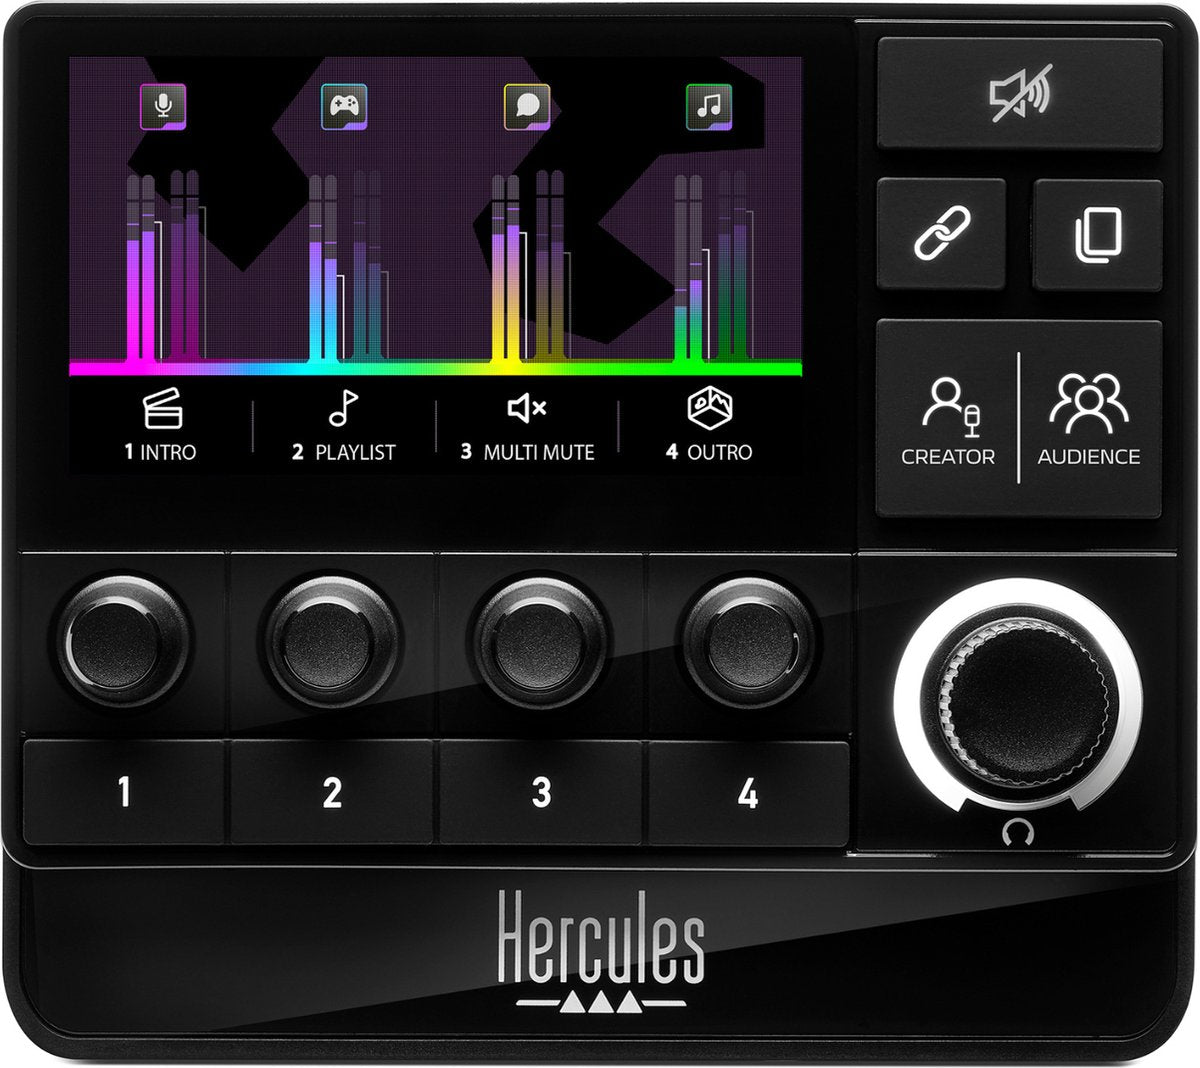 Hercules Stream 200 XLR, Contrôleur audio pro pour la gestion en temps réel des mixes créateur / audience, avec Préamplificateur micro, Écran LCD, Encodeurs haute résolution, 4 boutons d’action